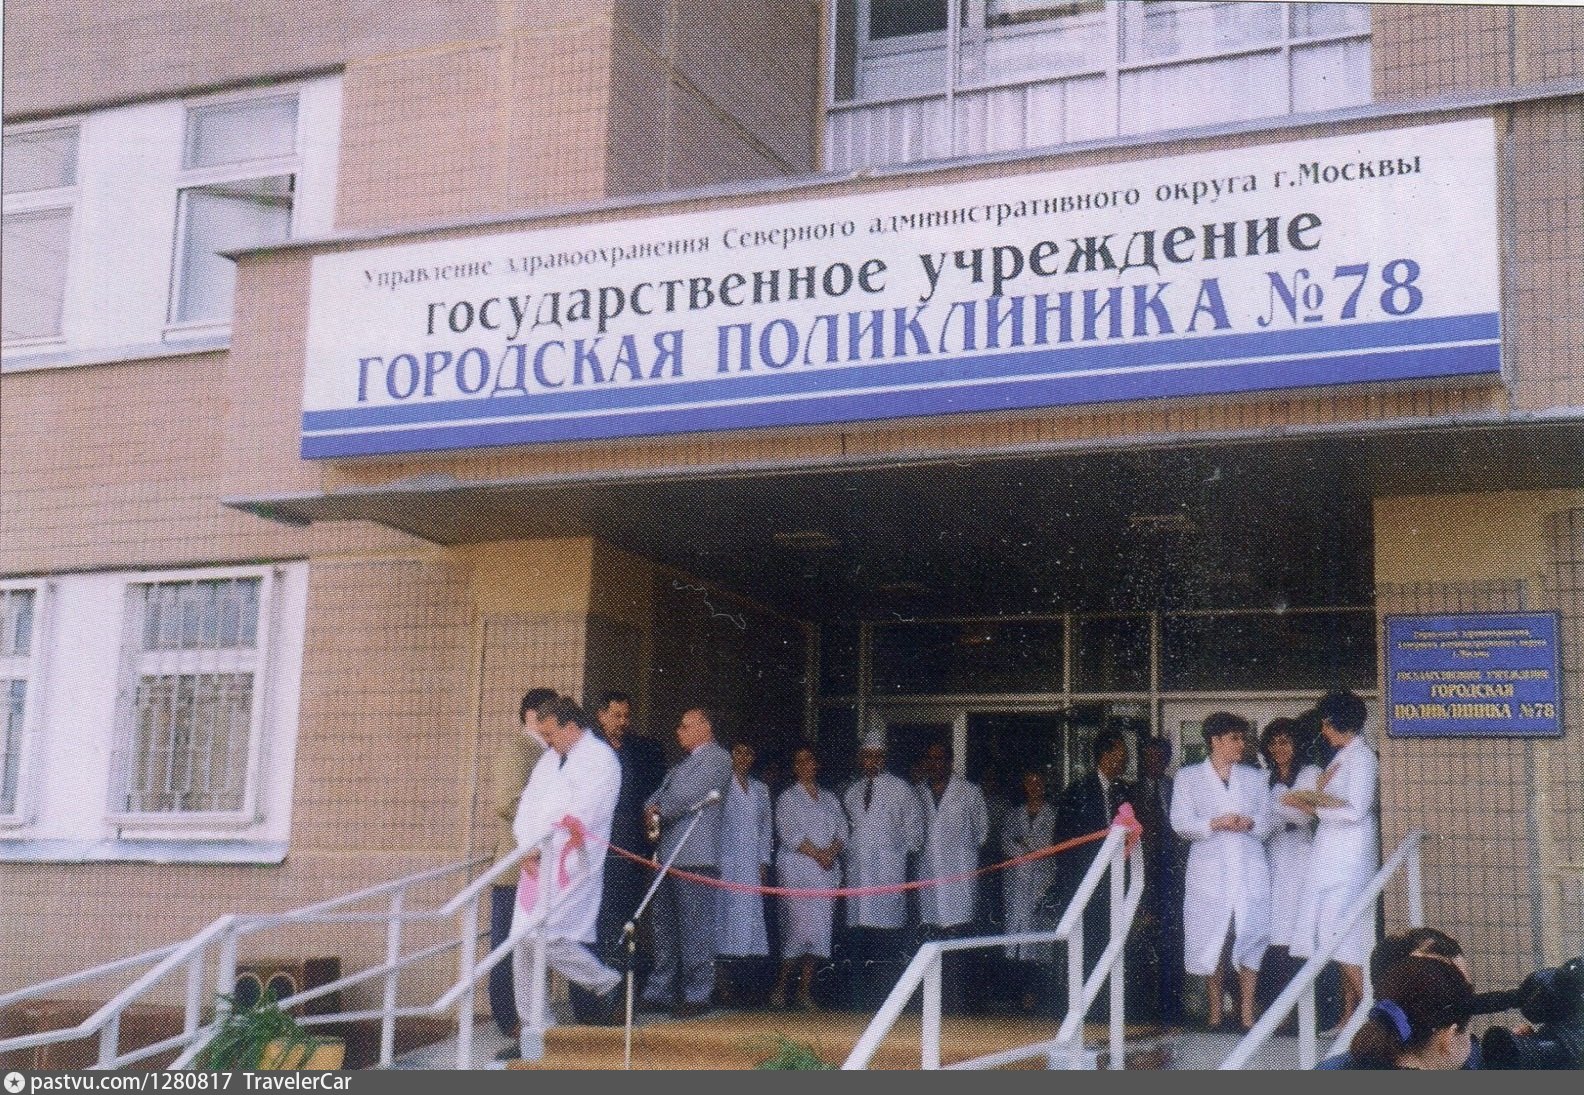 Поликлиники № 86 Дегунинская.